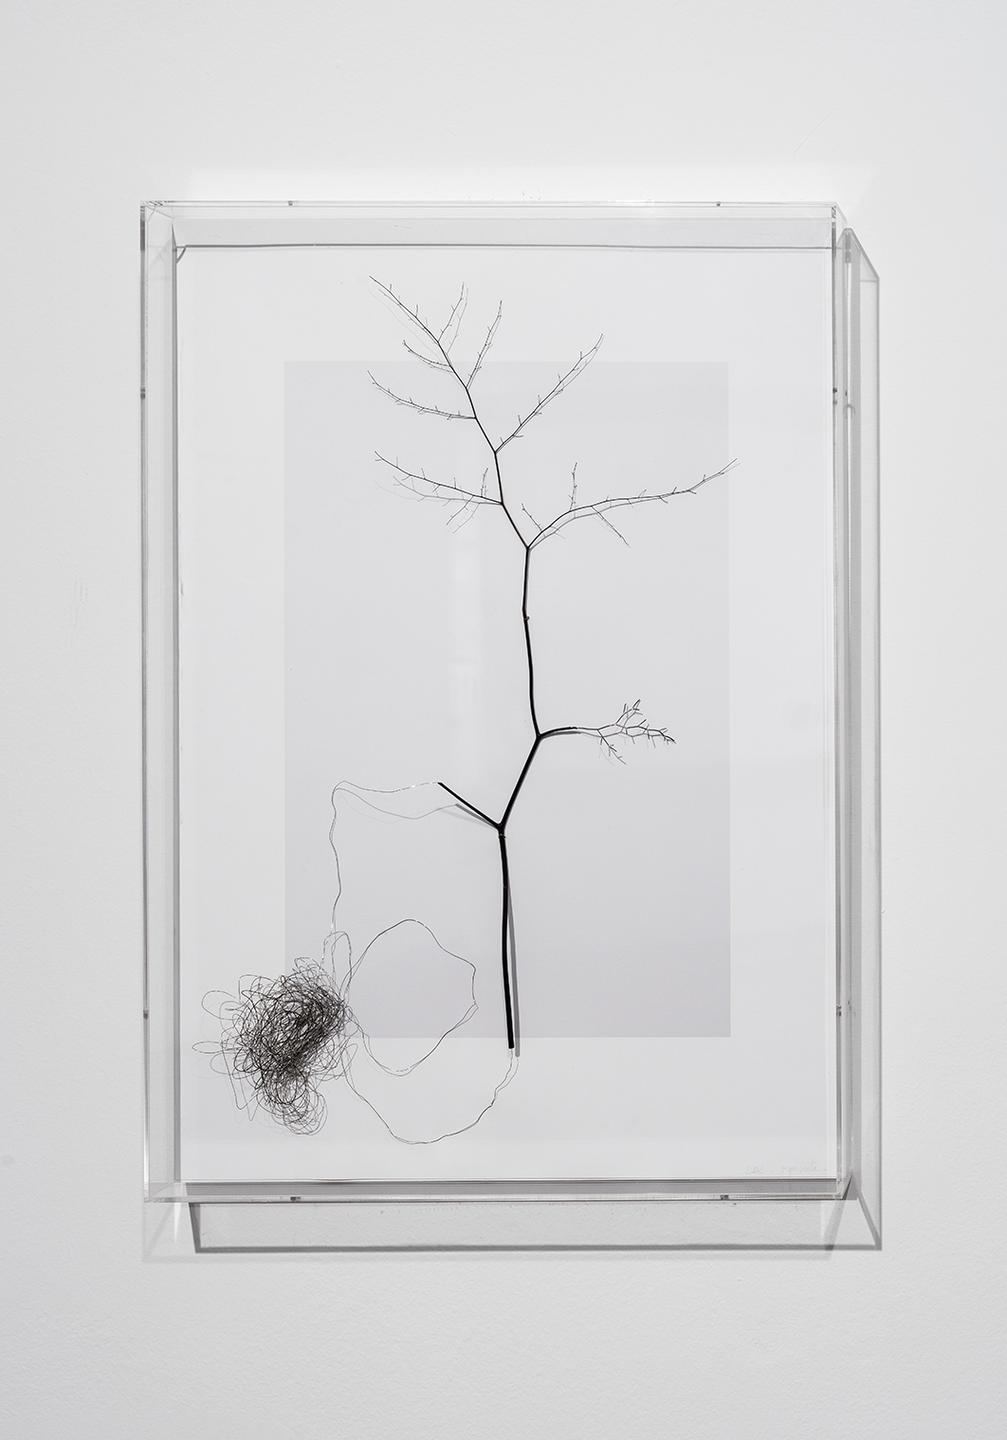 “Clone”, 2015, avenca, fio de metal e impressão fotográfica em papel de algodão, 80 x 56 cm